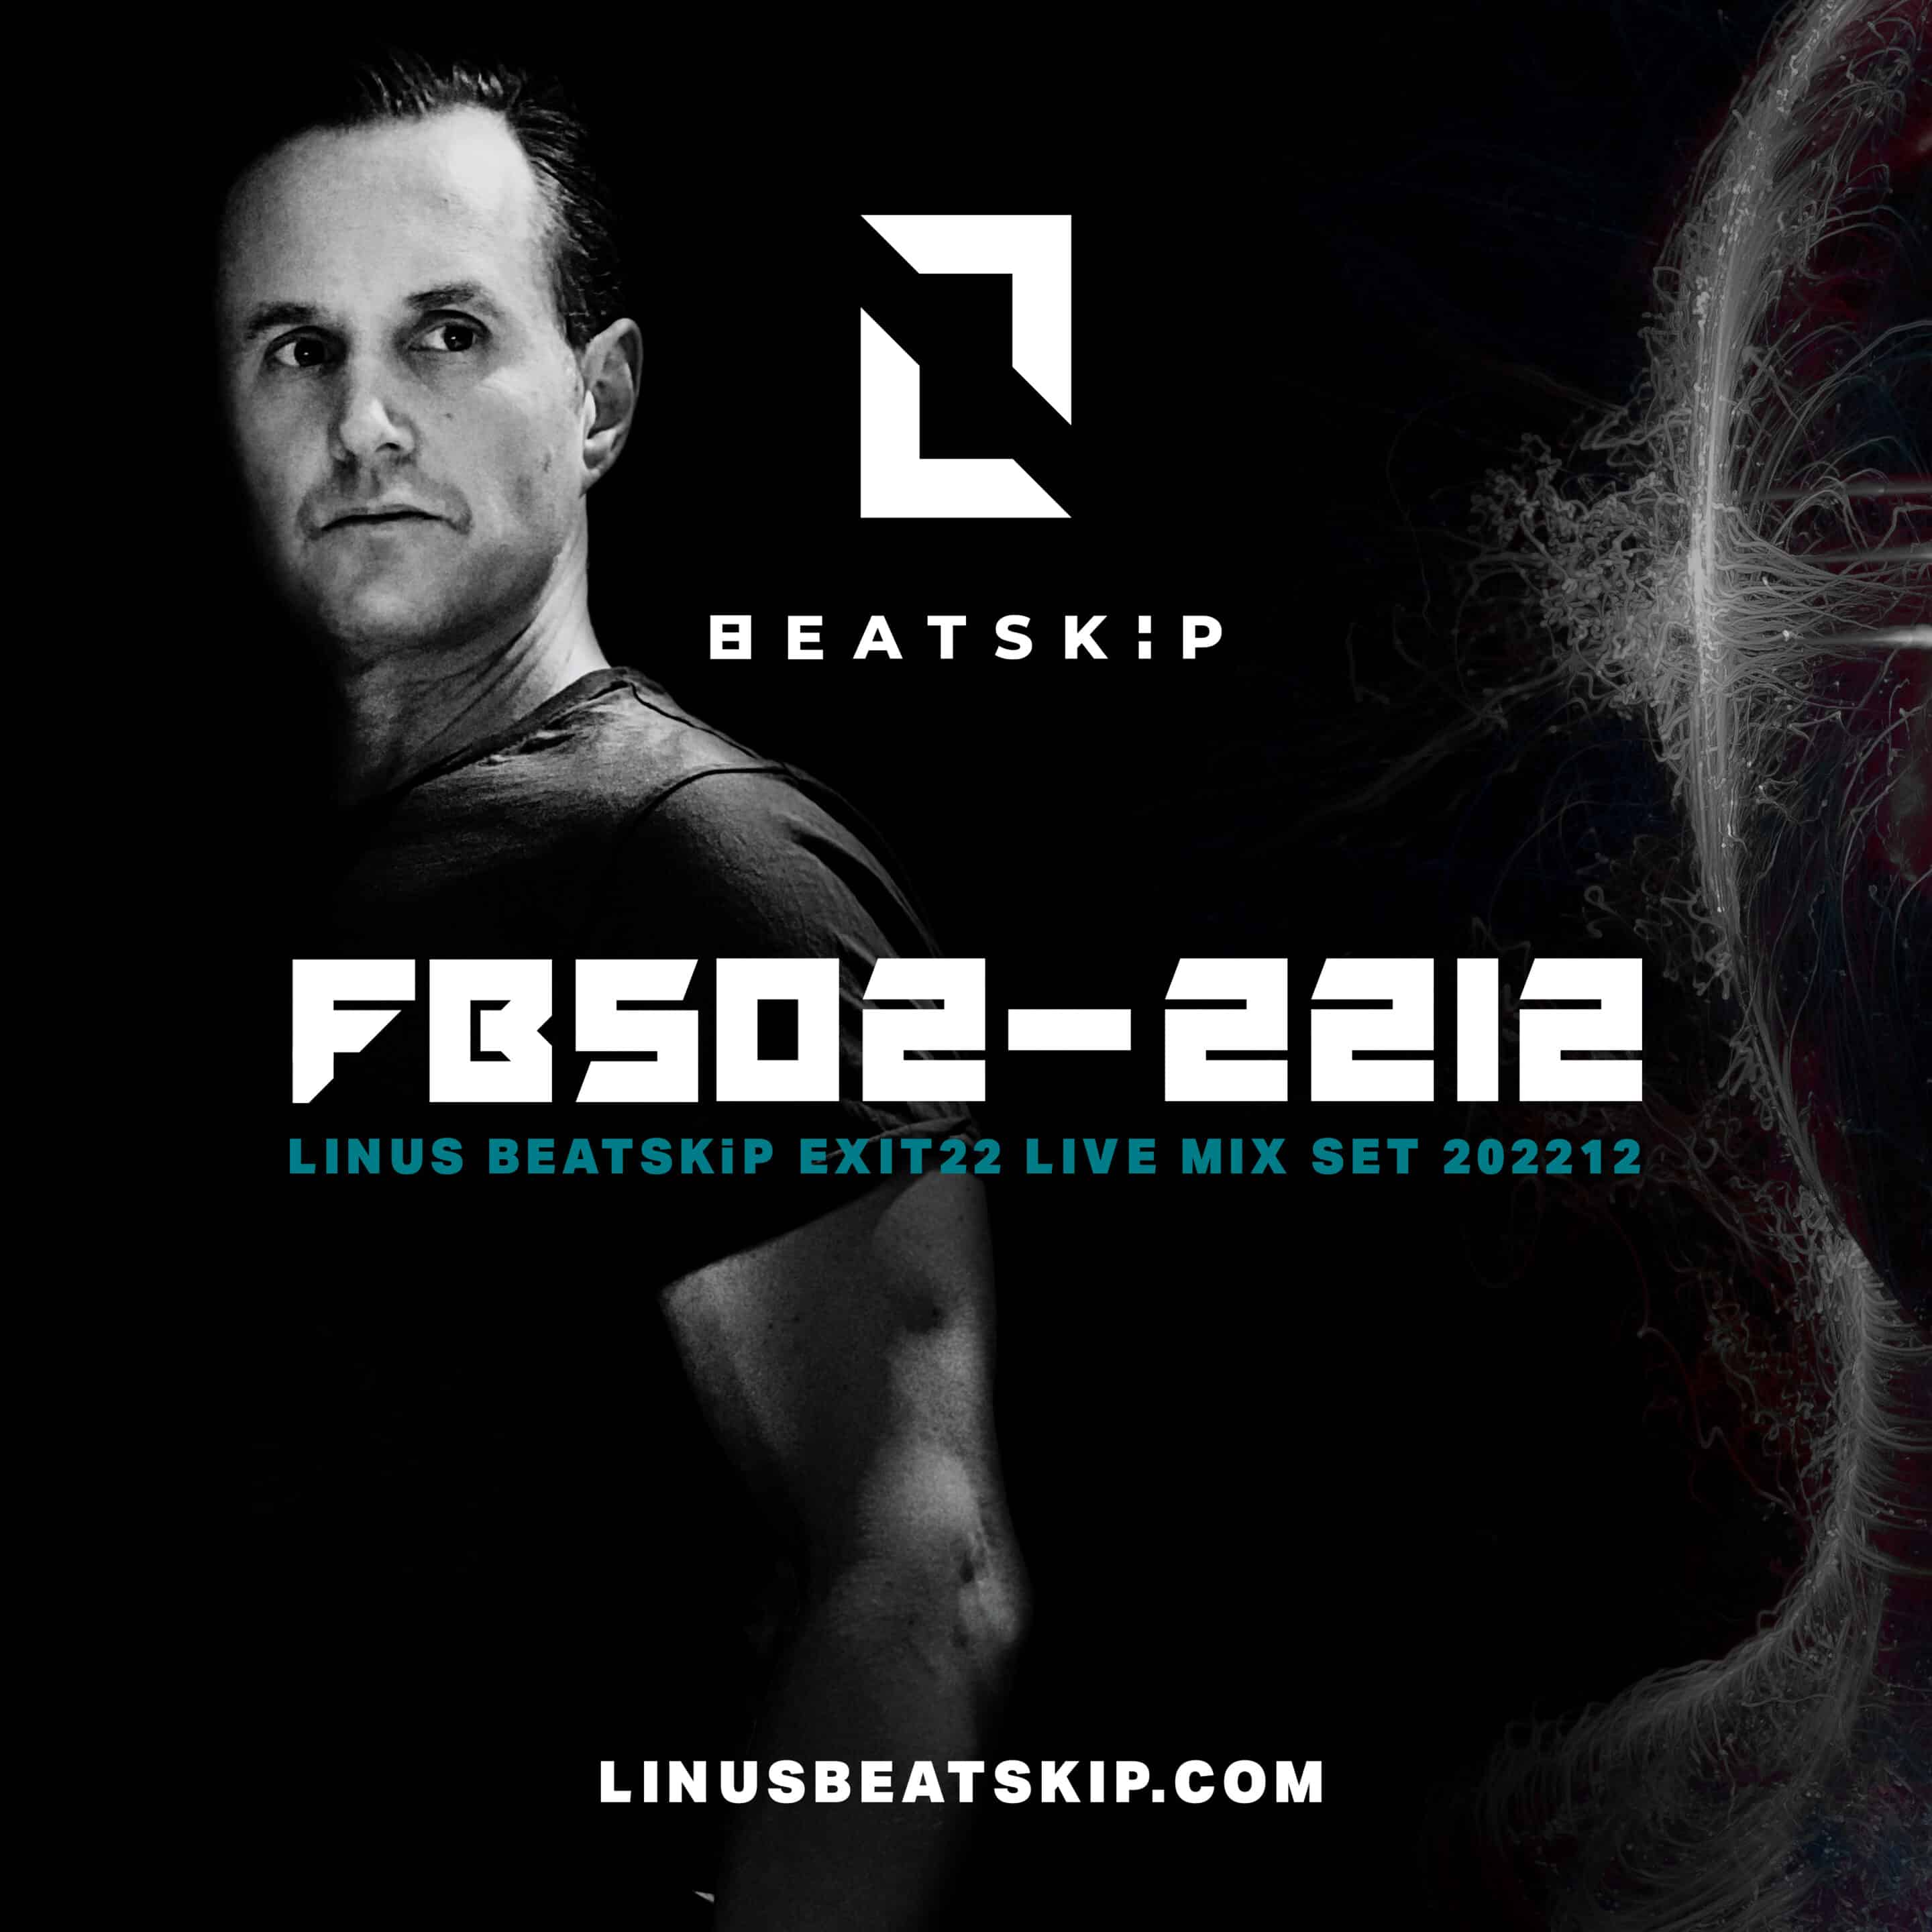 DJ MIX: LBS02-2212 - LINUS BEATSKiP Exit 22 live dj mix set